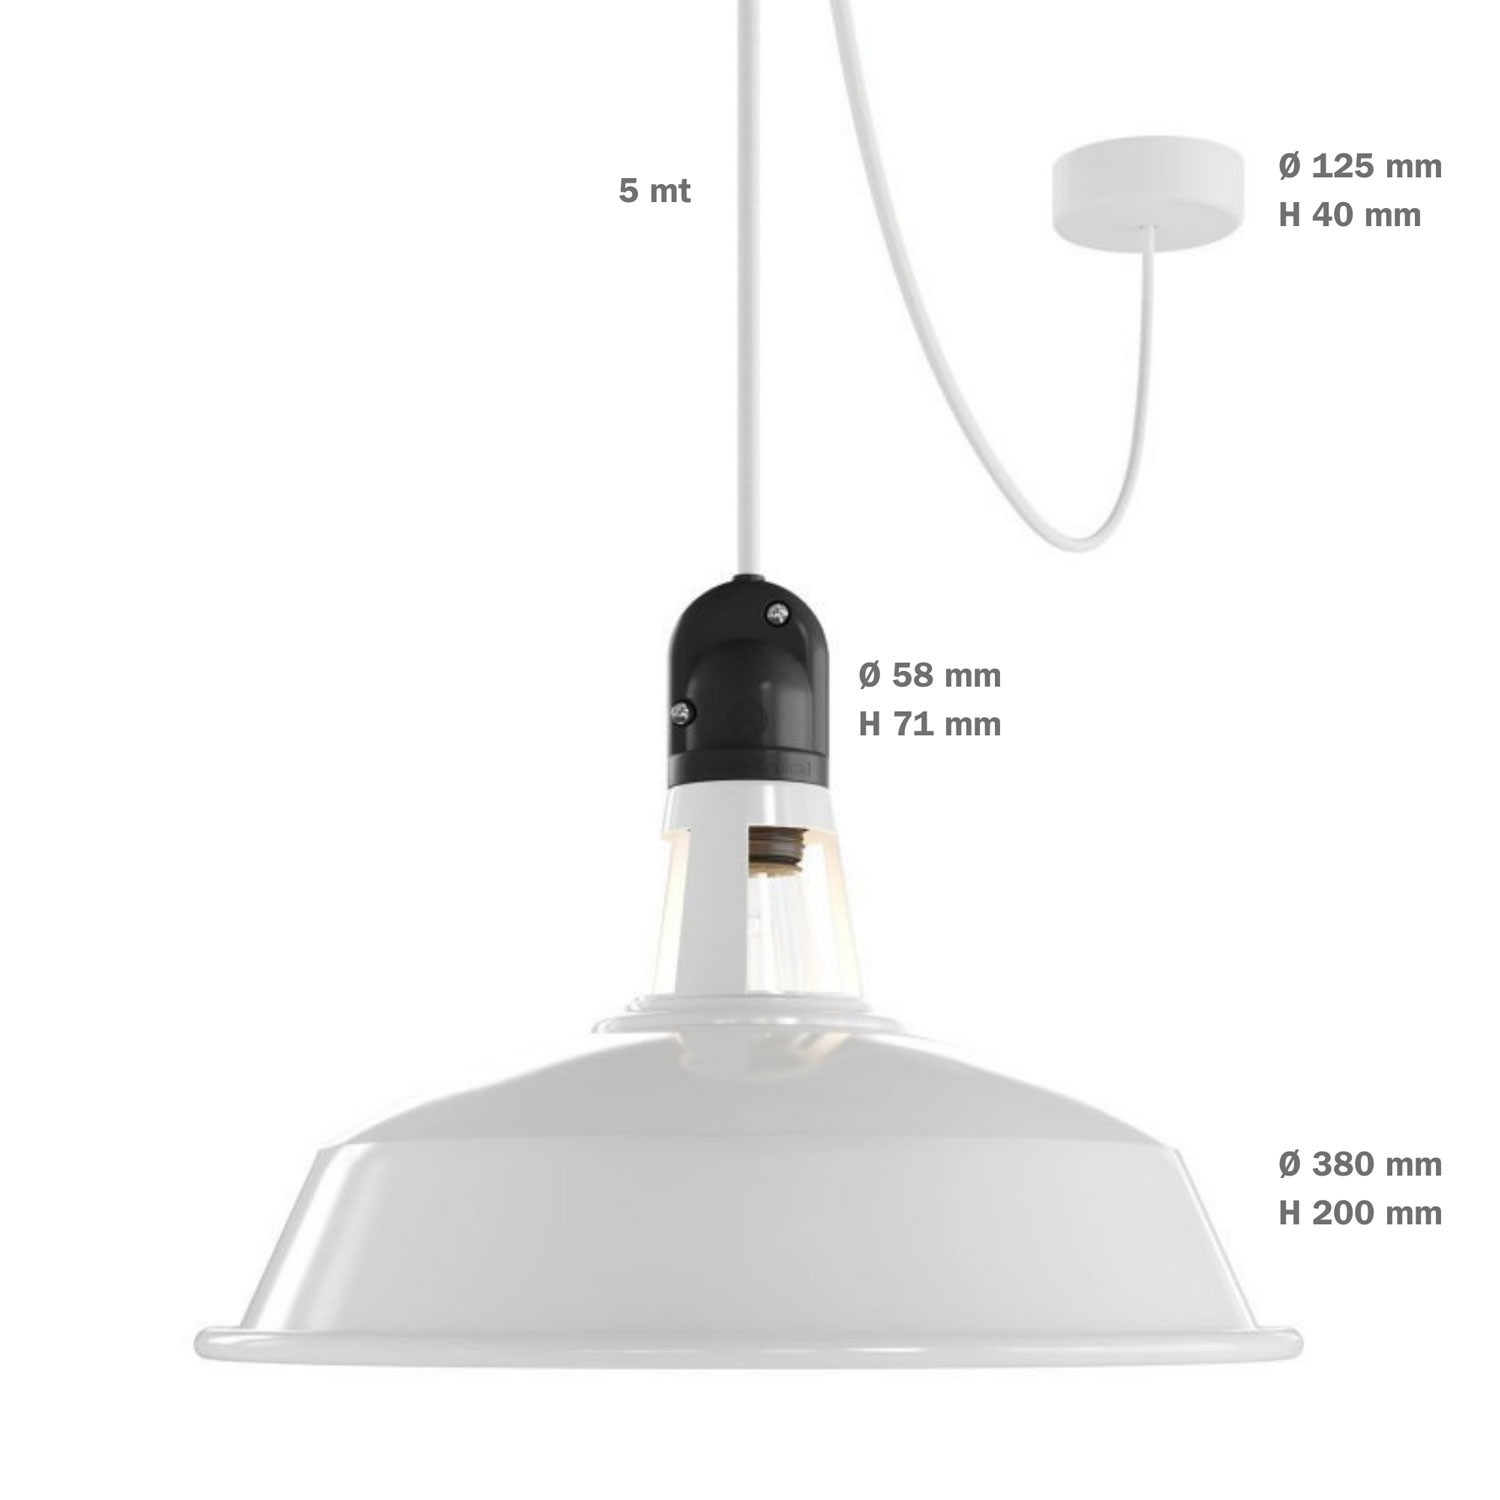 EIVA PASTEL Utomhus Pendelupphäng för lampskärm med textilkabel, takkopp i silikon, takfäste och lamphållare IP65. Vattentät.